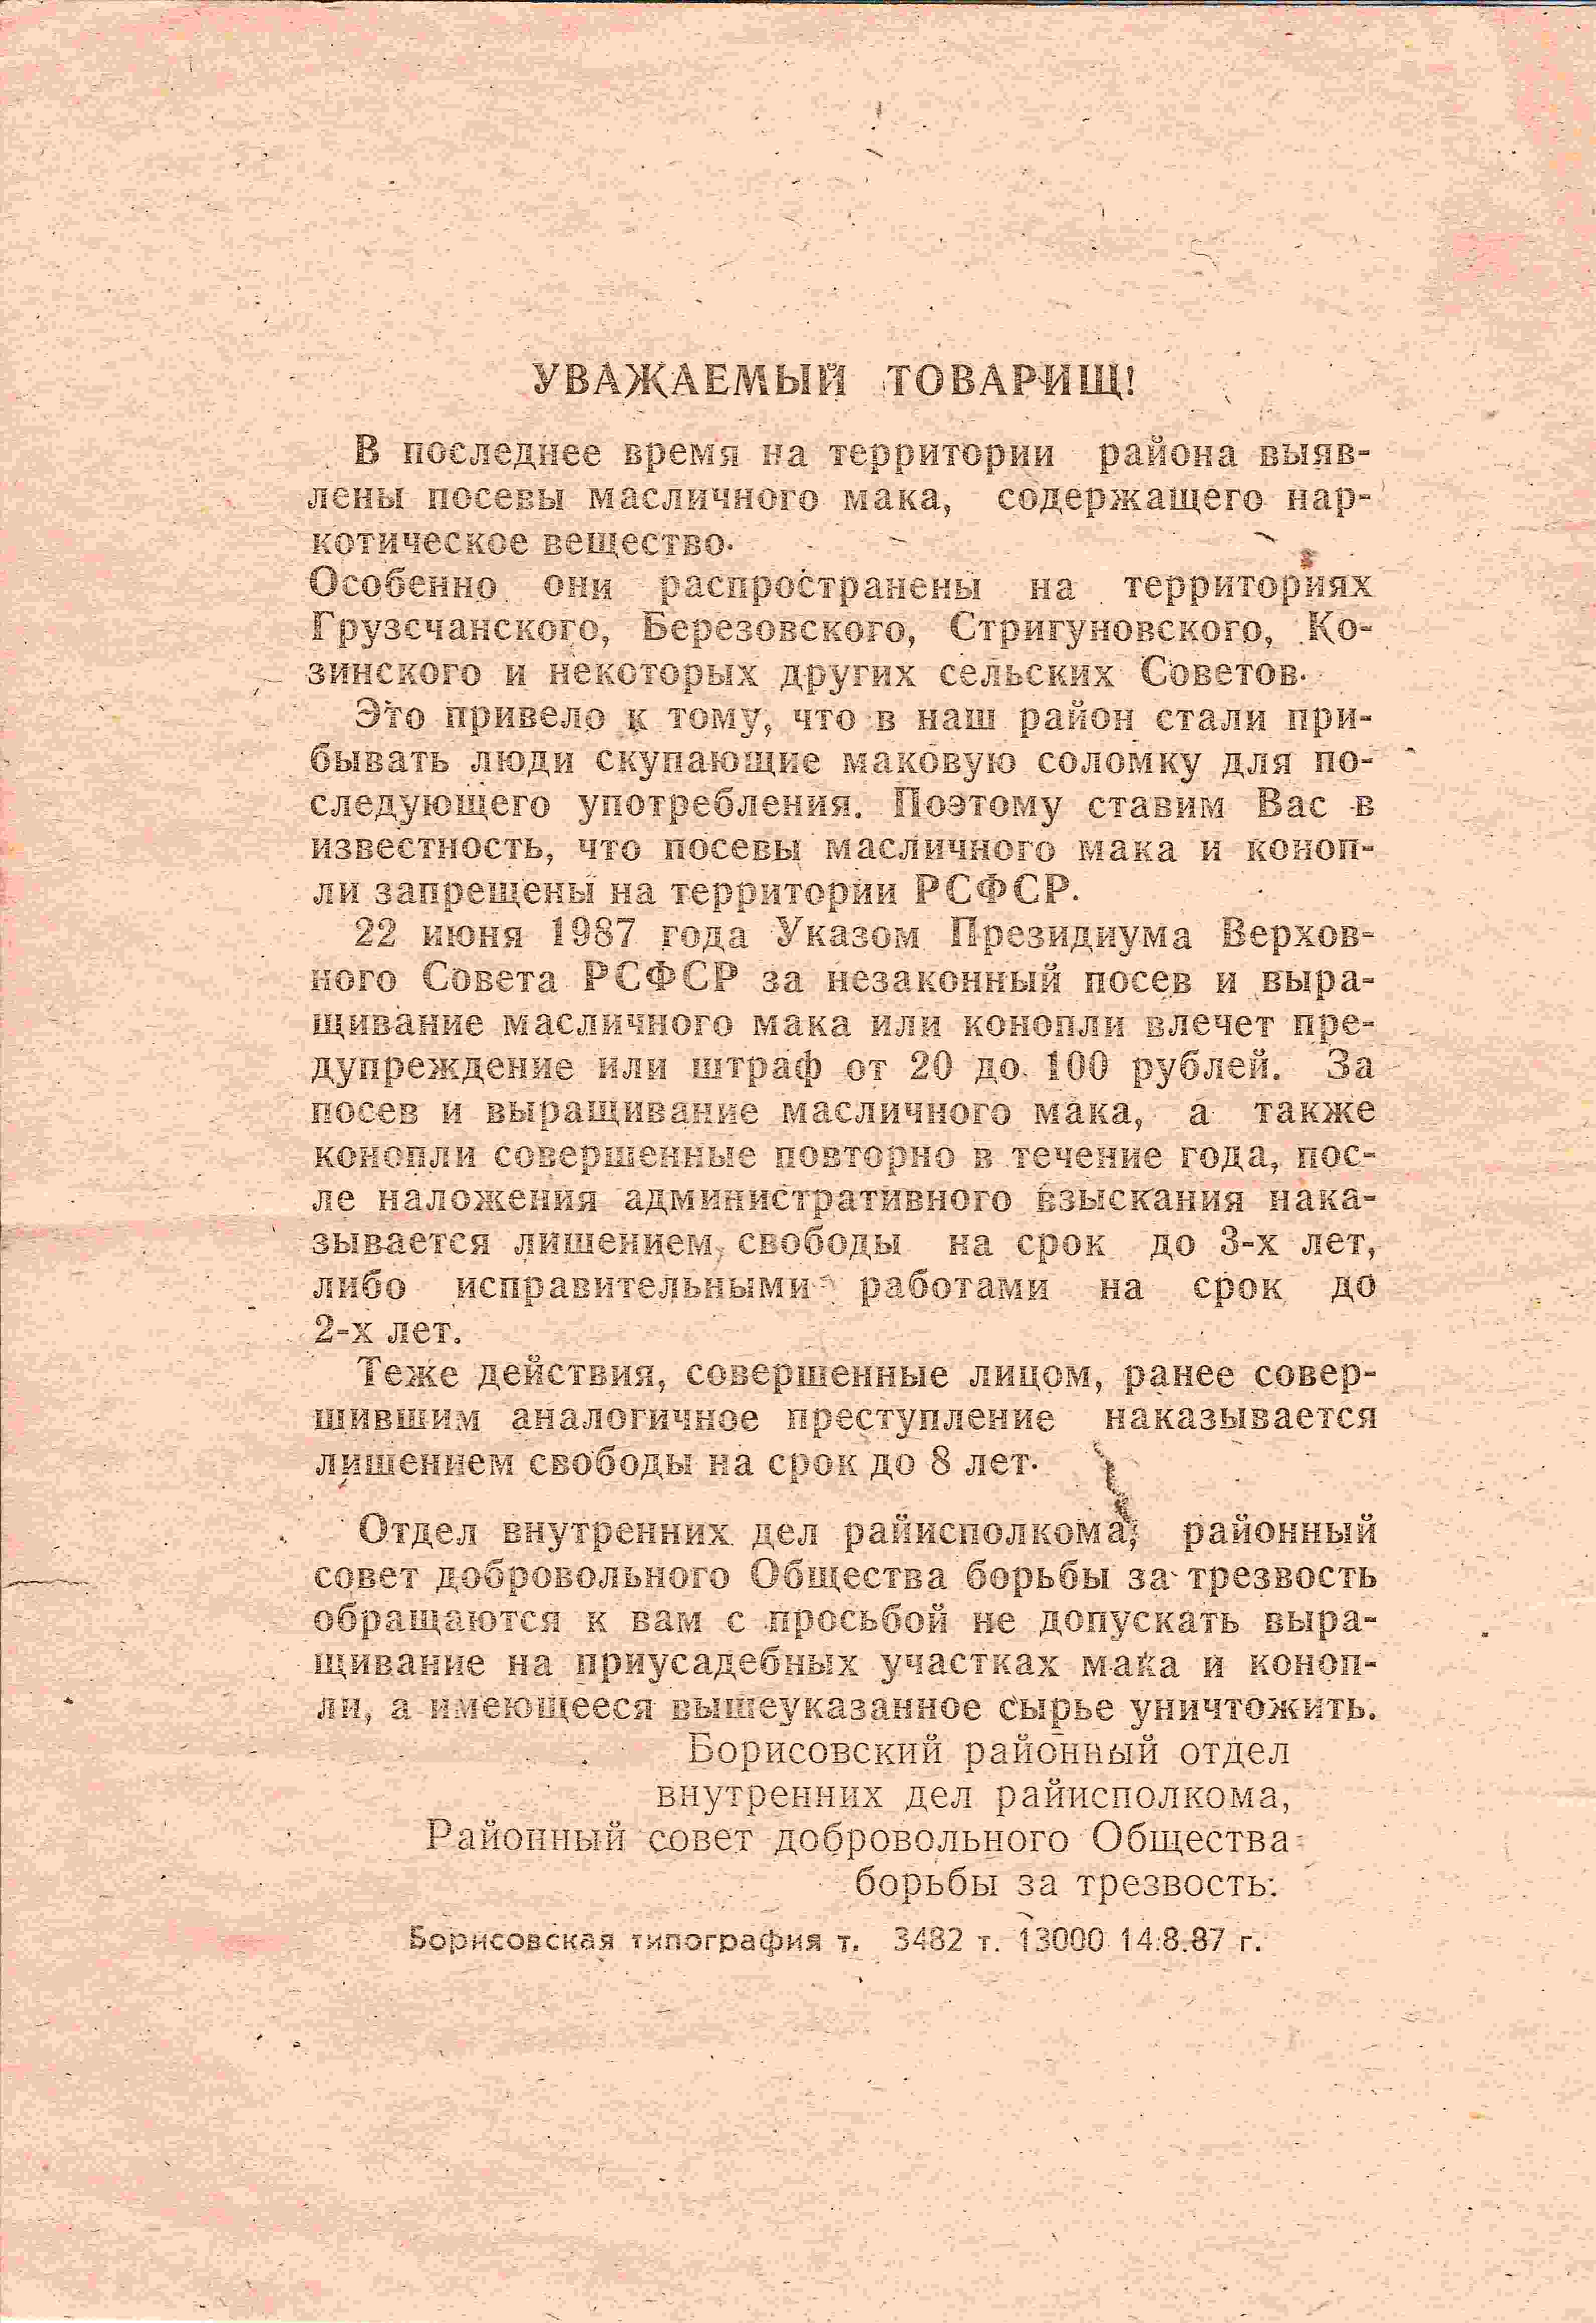 Листовка Борисовского ОВД Белгородской области, направленная на борьбу с посевами масличного мака и конопли. 1987.